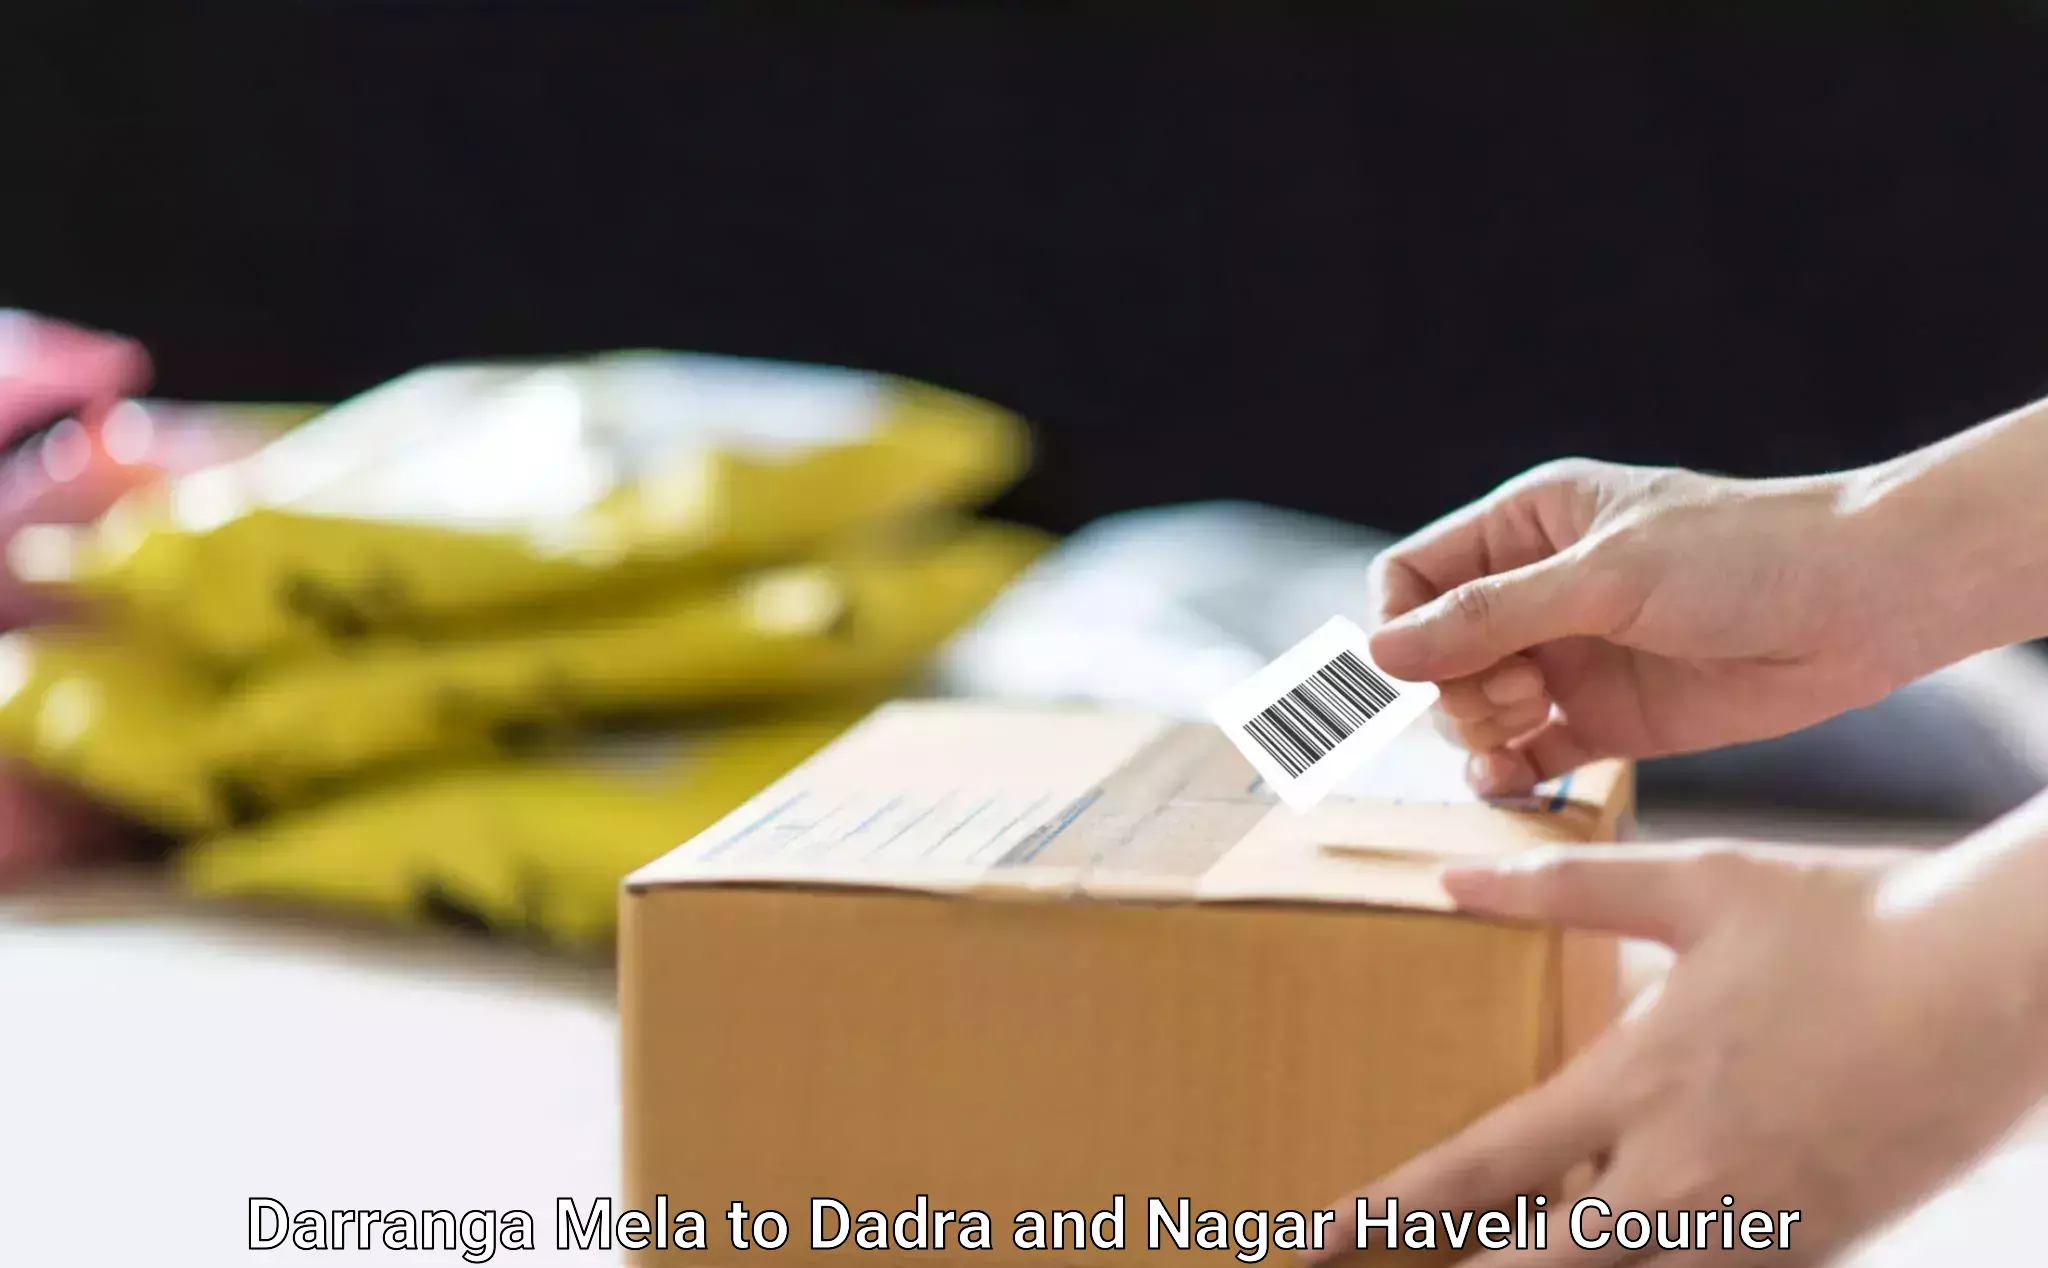 Small business couriers Darranga Mela to Dadra and Nagar Haveli